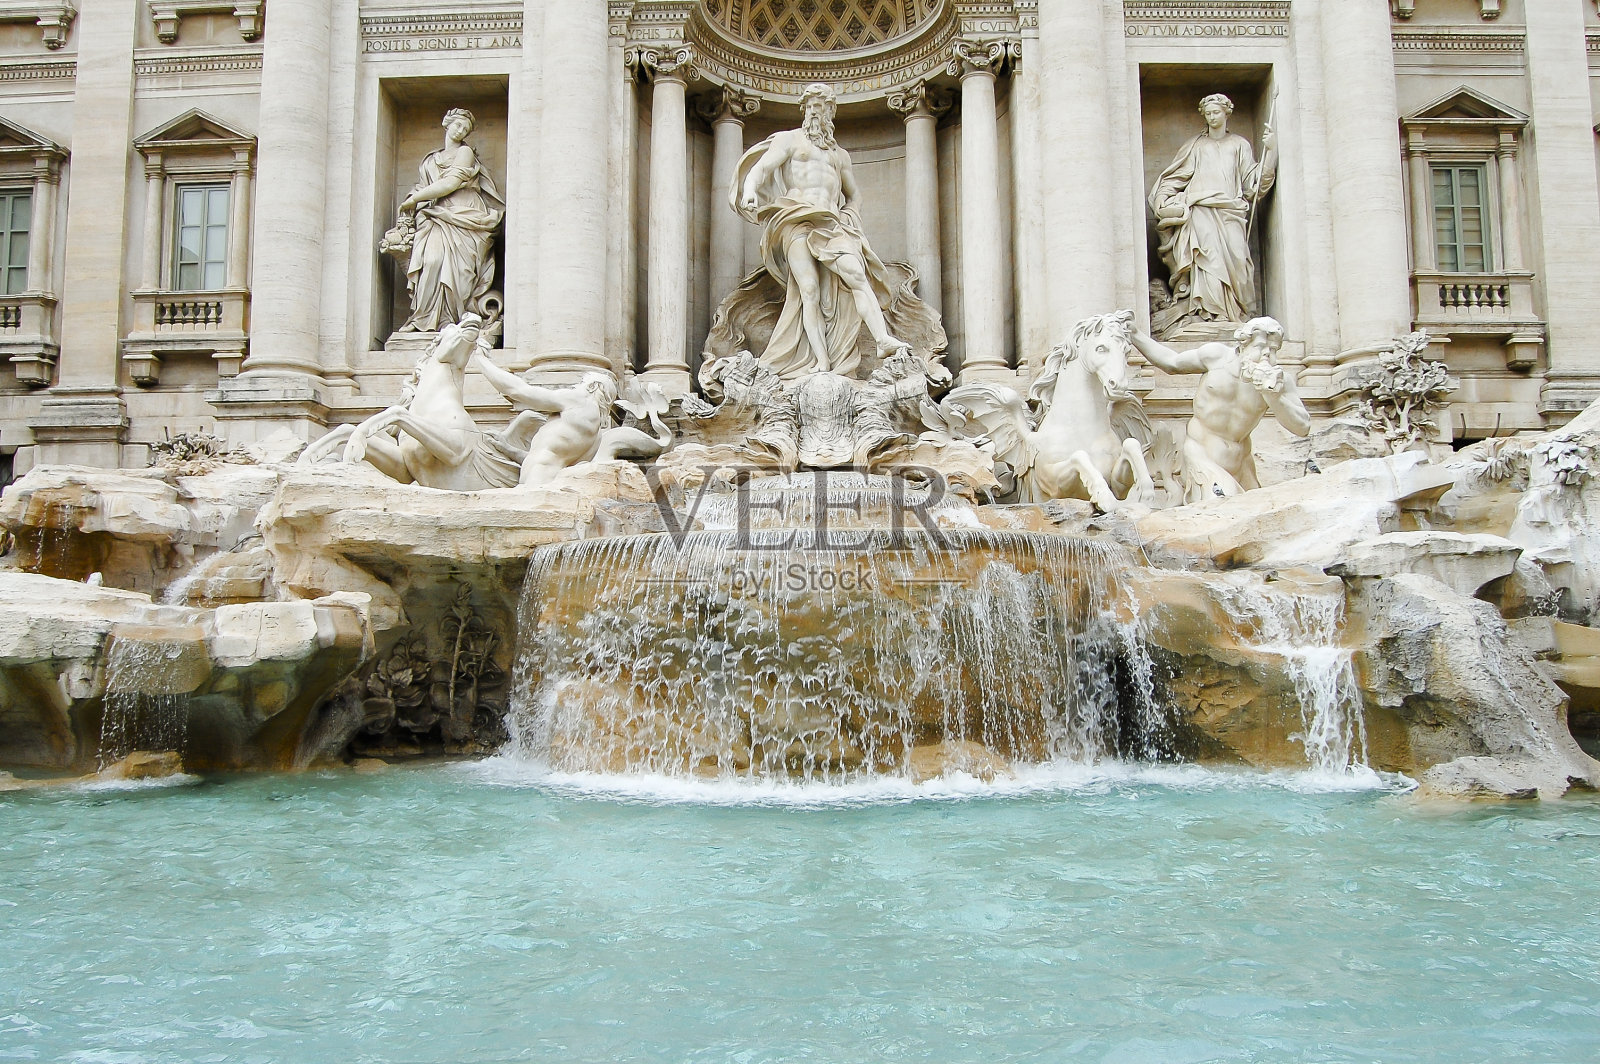 特莱维喷泉-罗马-意大利照片摄影图片